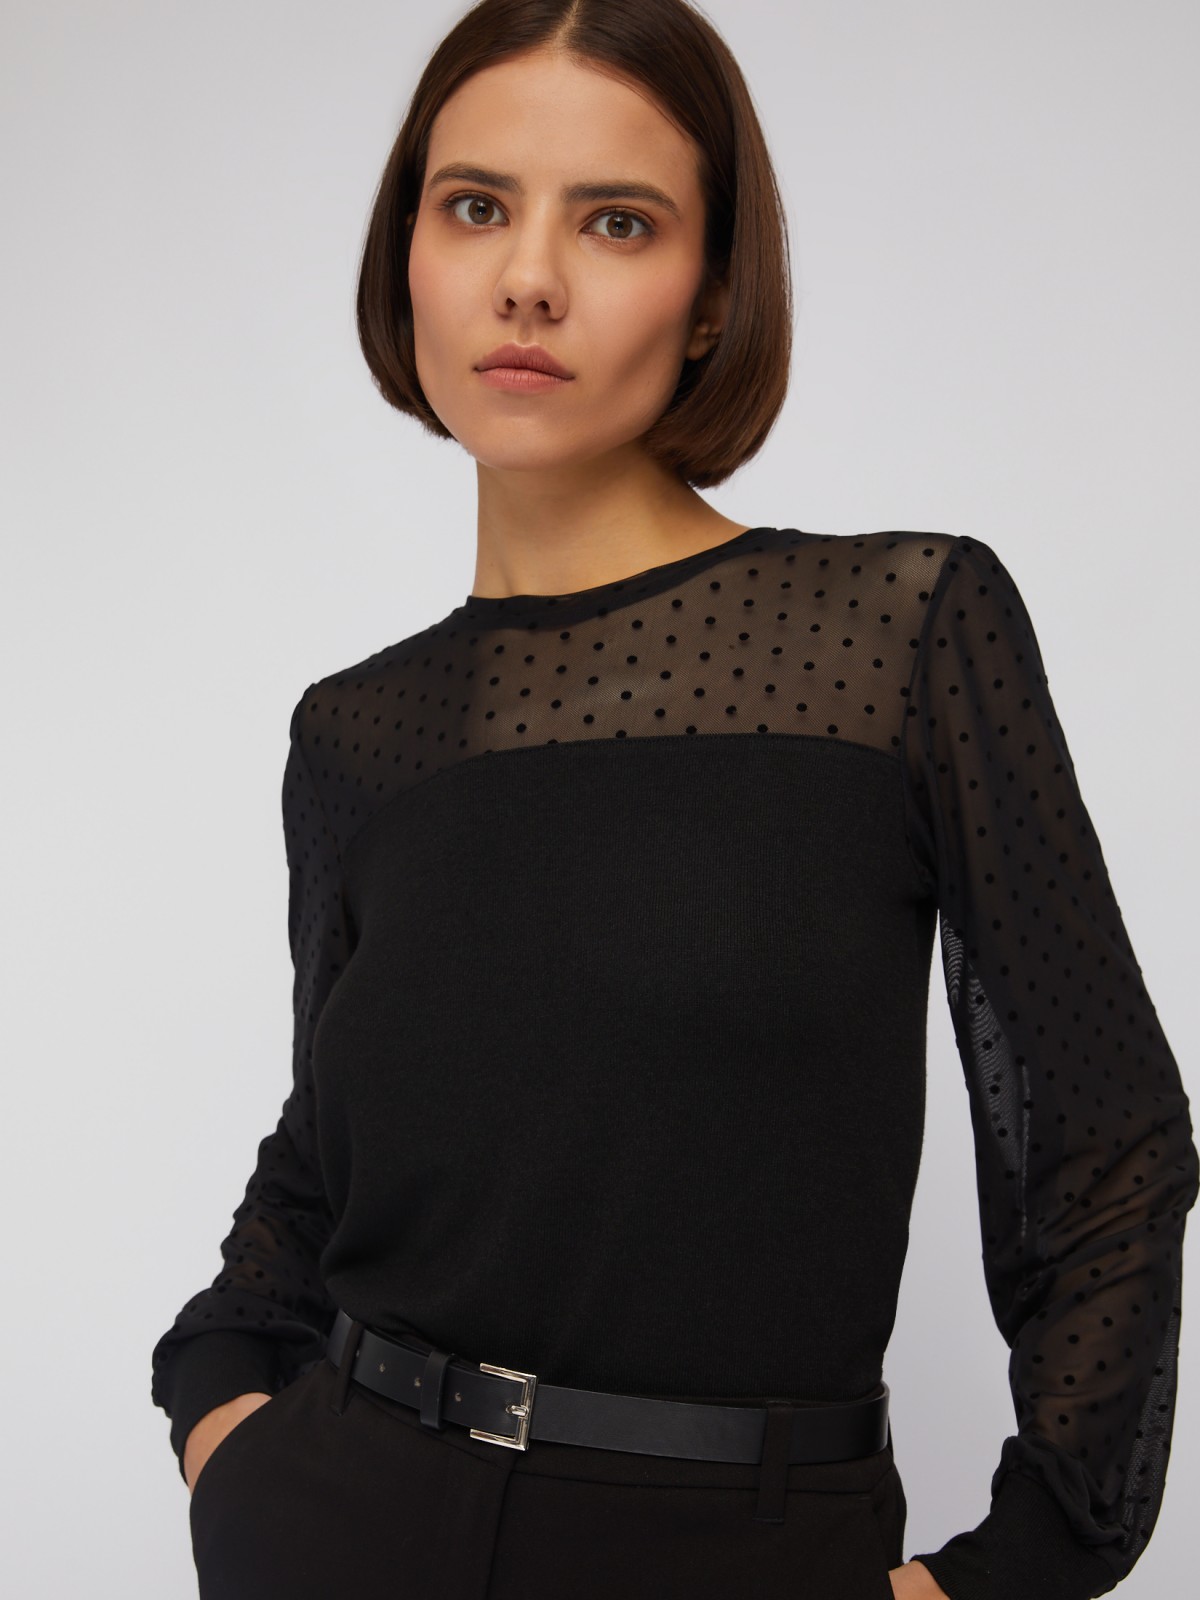 Трикотажный топ-блузка с акцентом на кокетке и рукавах zolla 024113159083, цвет черный, размер XS - фото 1